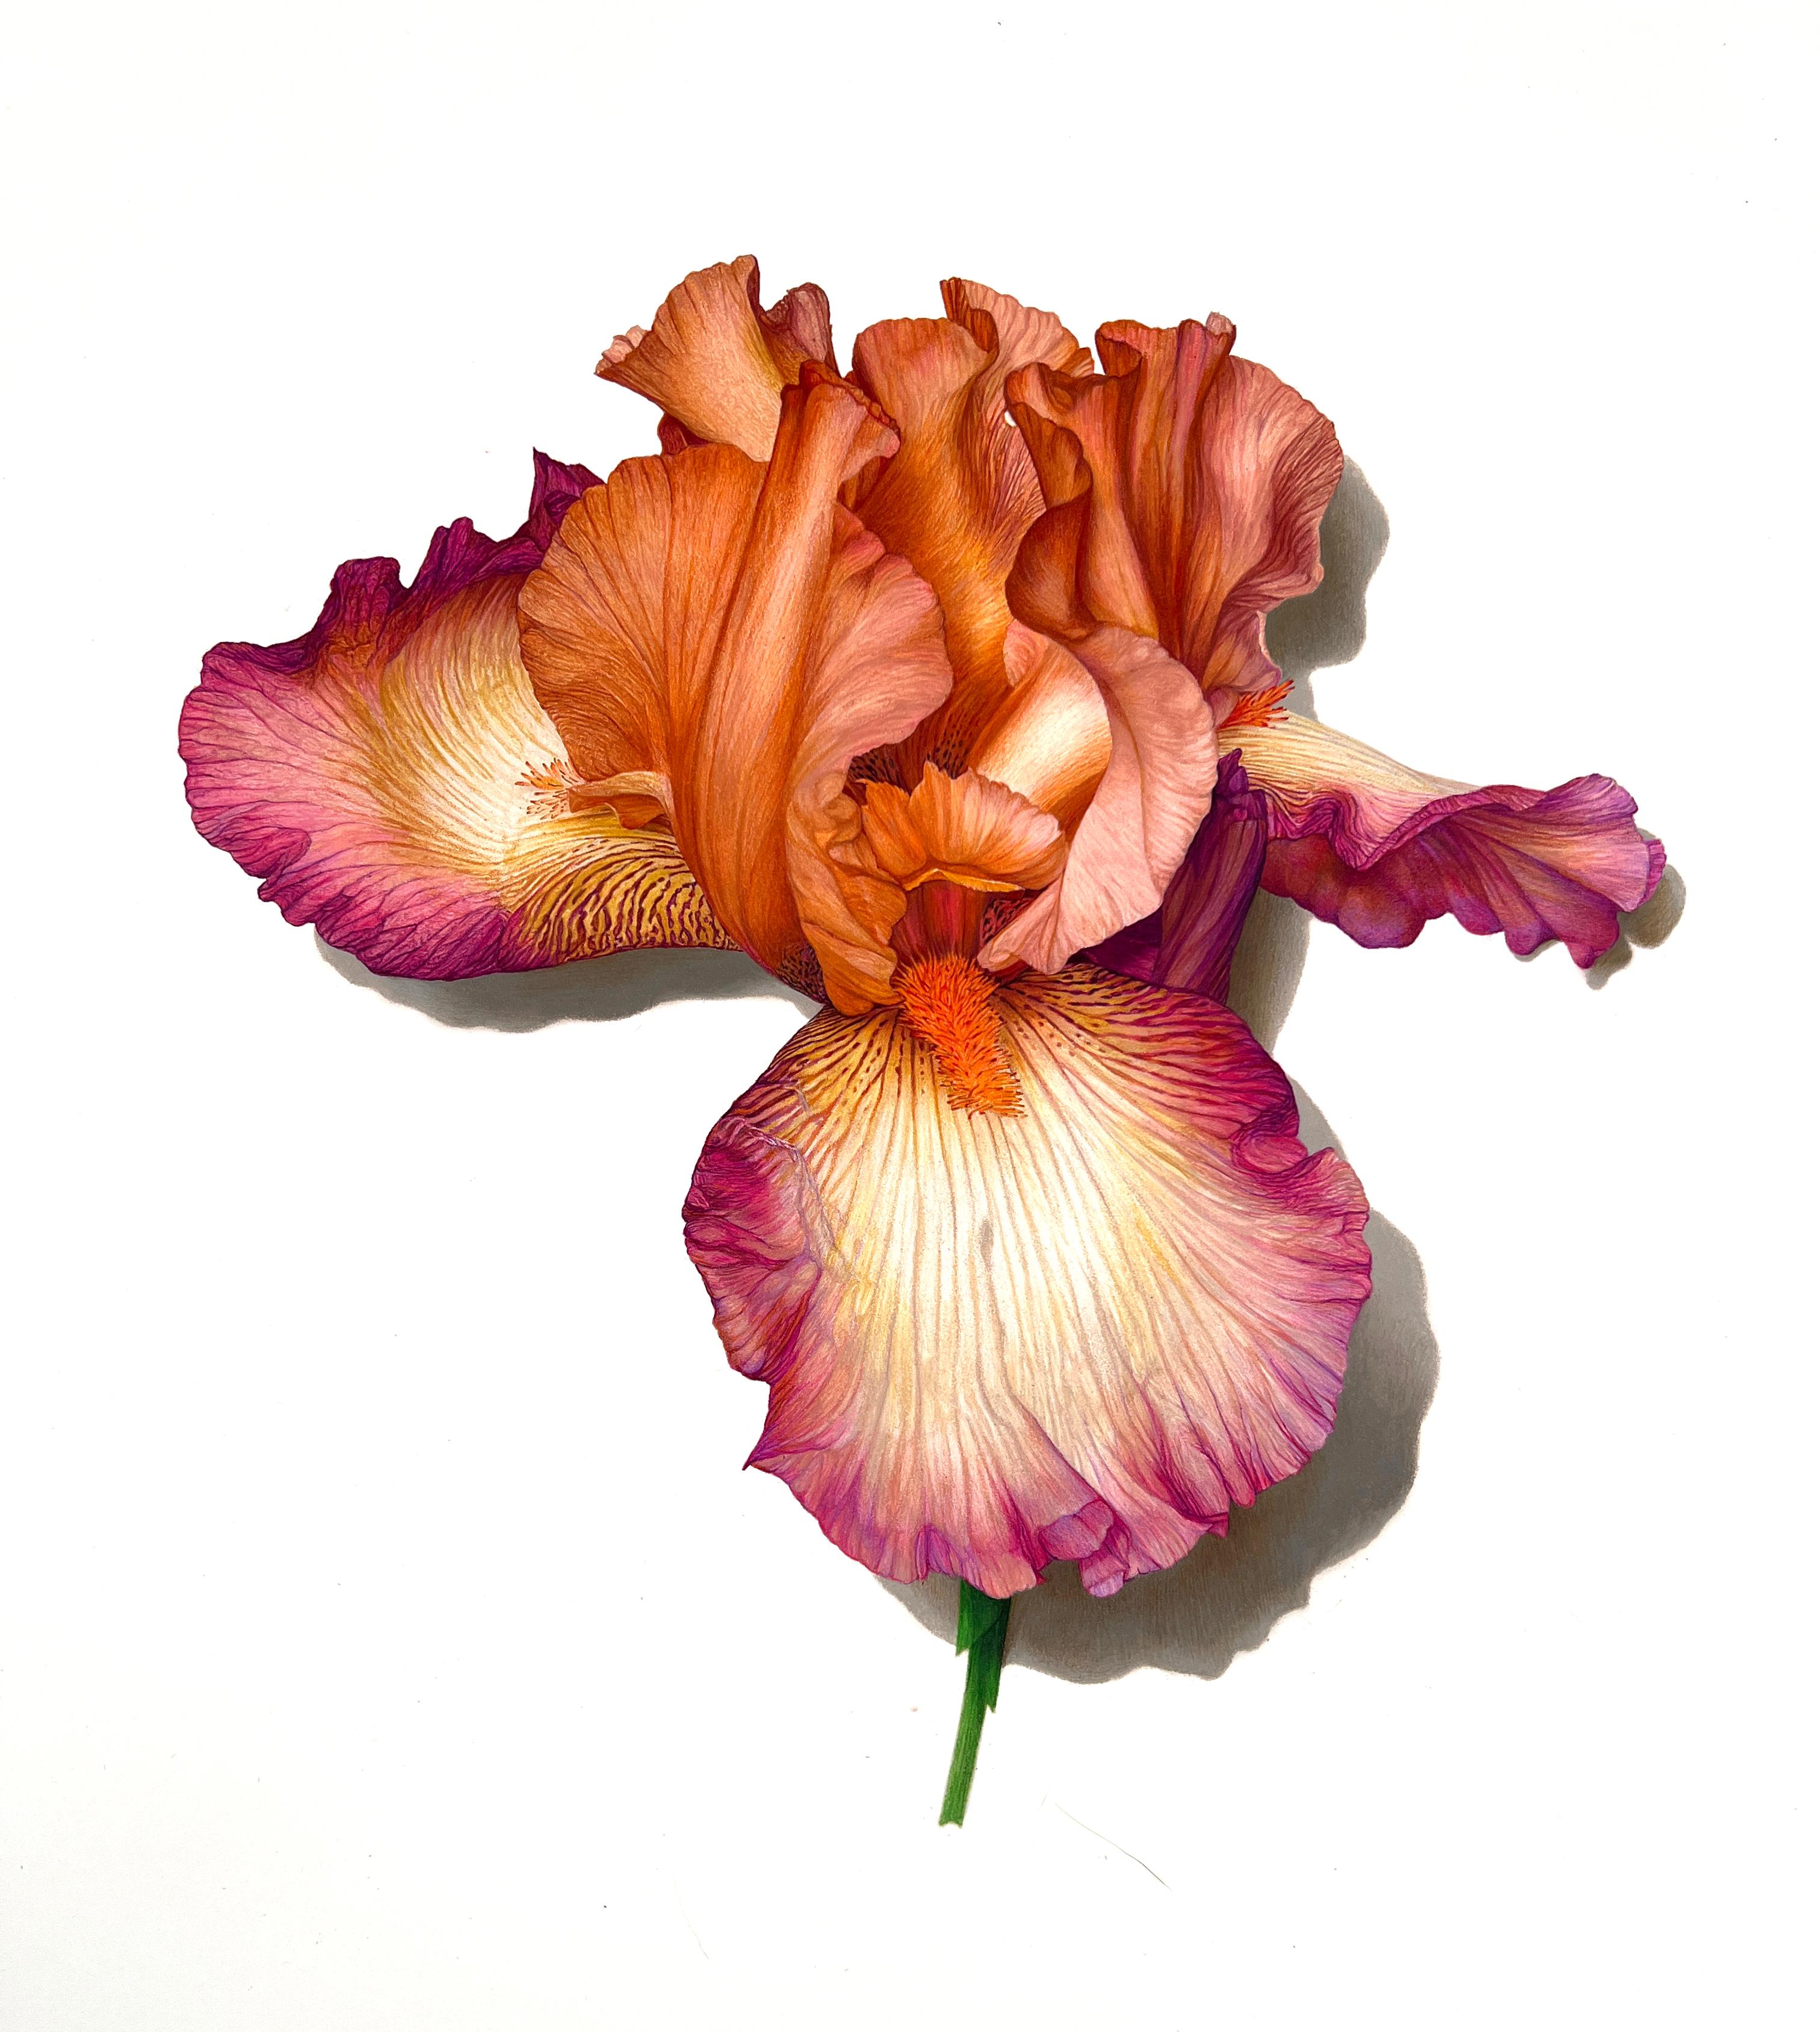 Still-Life David Morrison - Snapshot Série n° 2 (Iris), dessin de nature morte au crayon en couleur photoréaliste